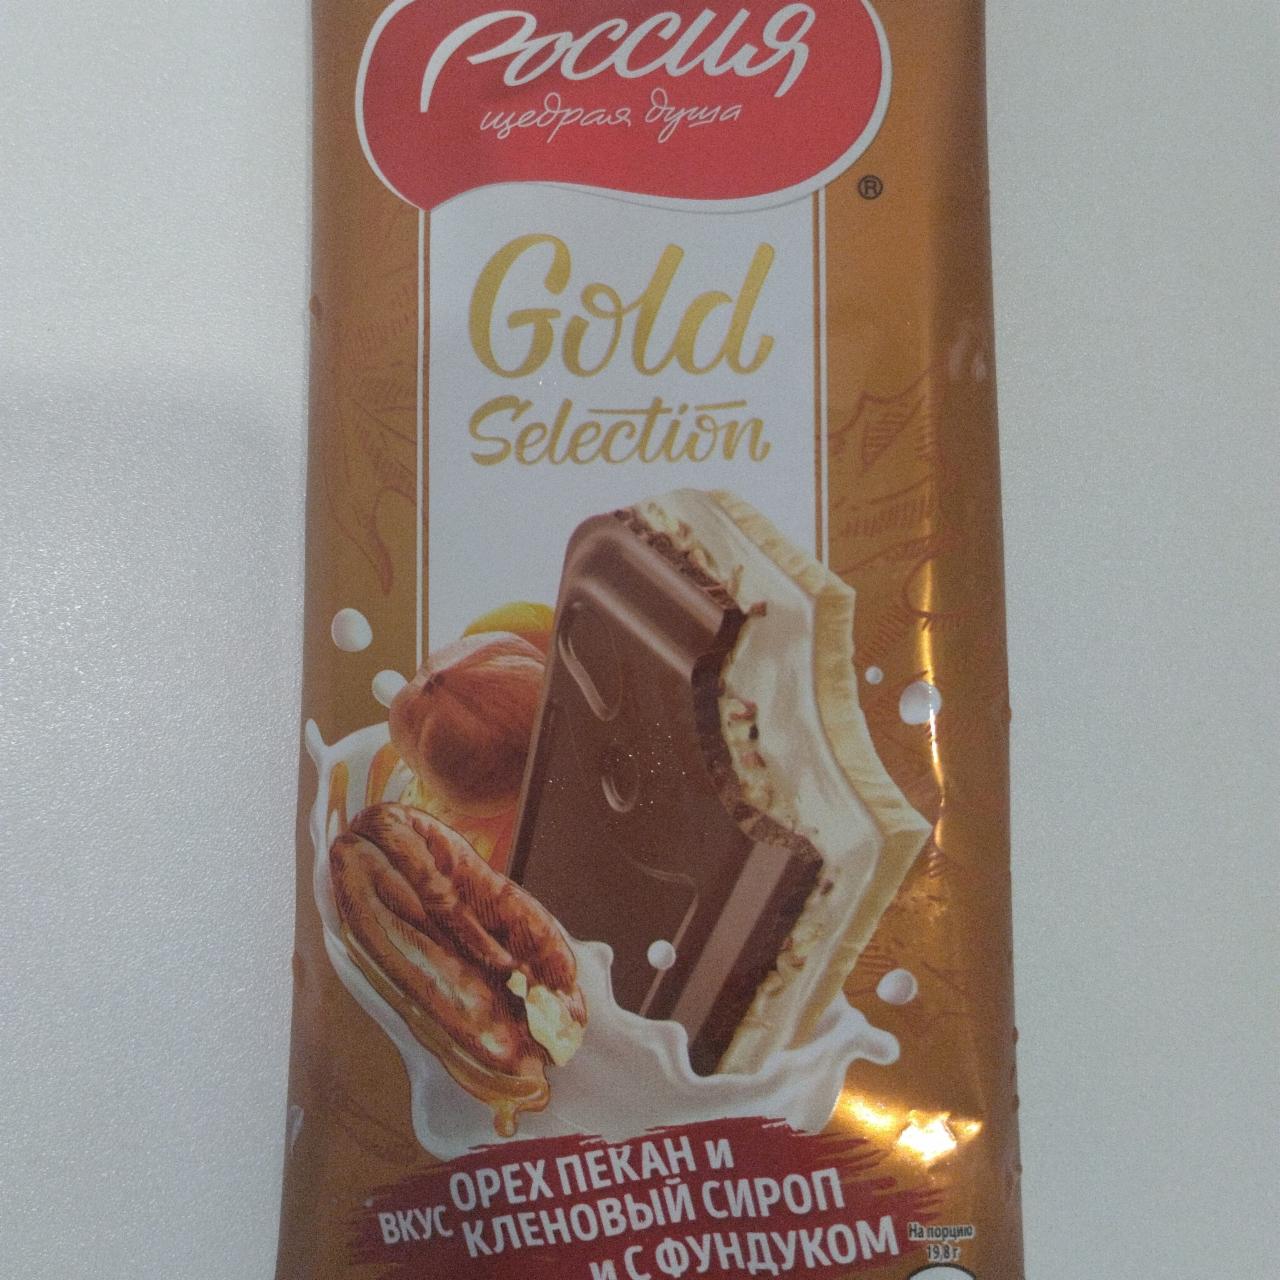 Фото - Молочный шоколад Gold Selection Орех пекан и кленовый сироп с цельным фундуком Россия щедрая душа